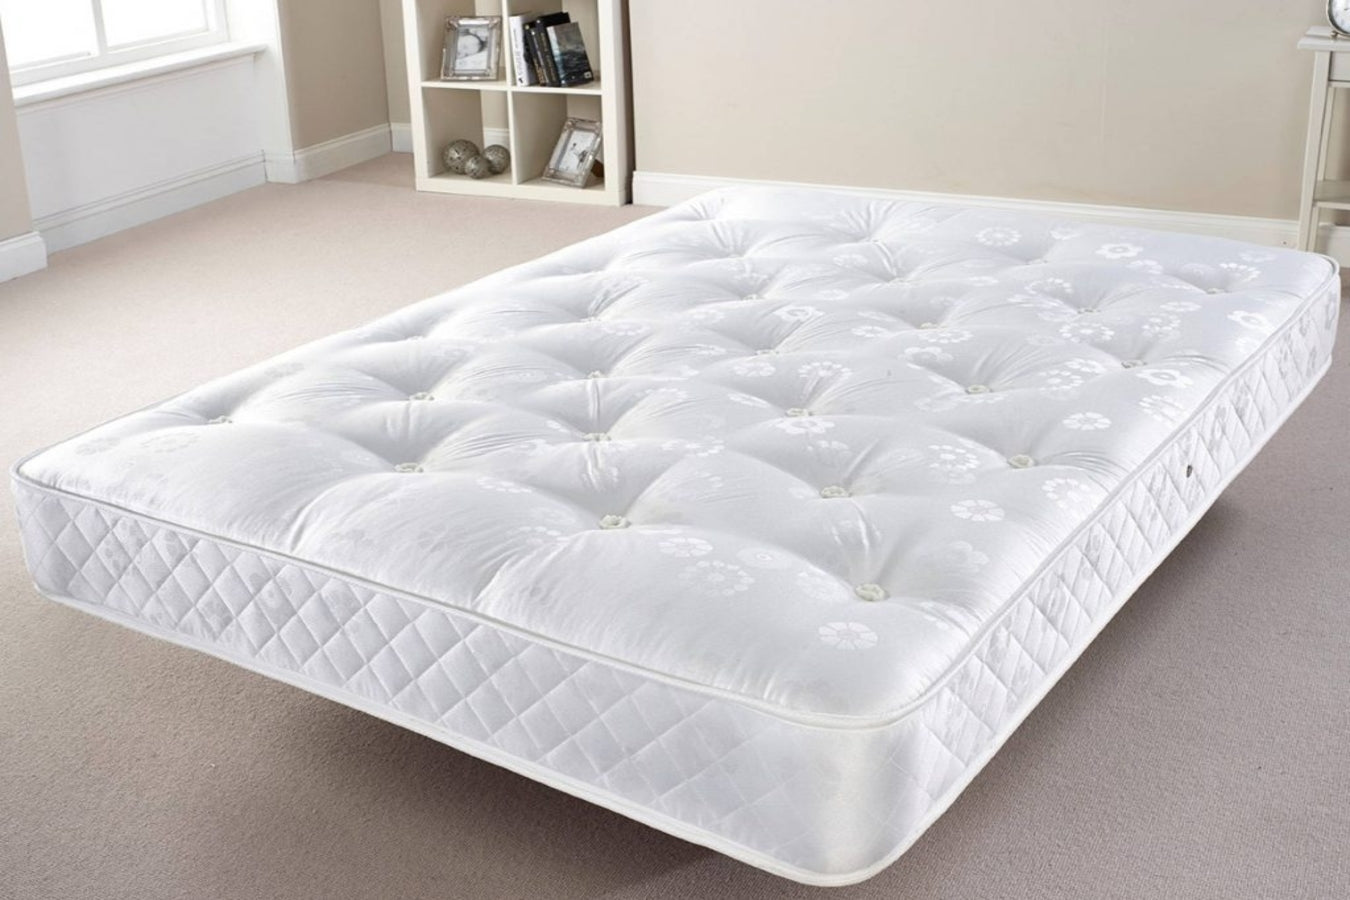 small sheet sets and mattress pads